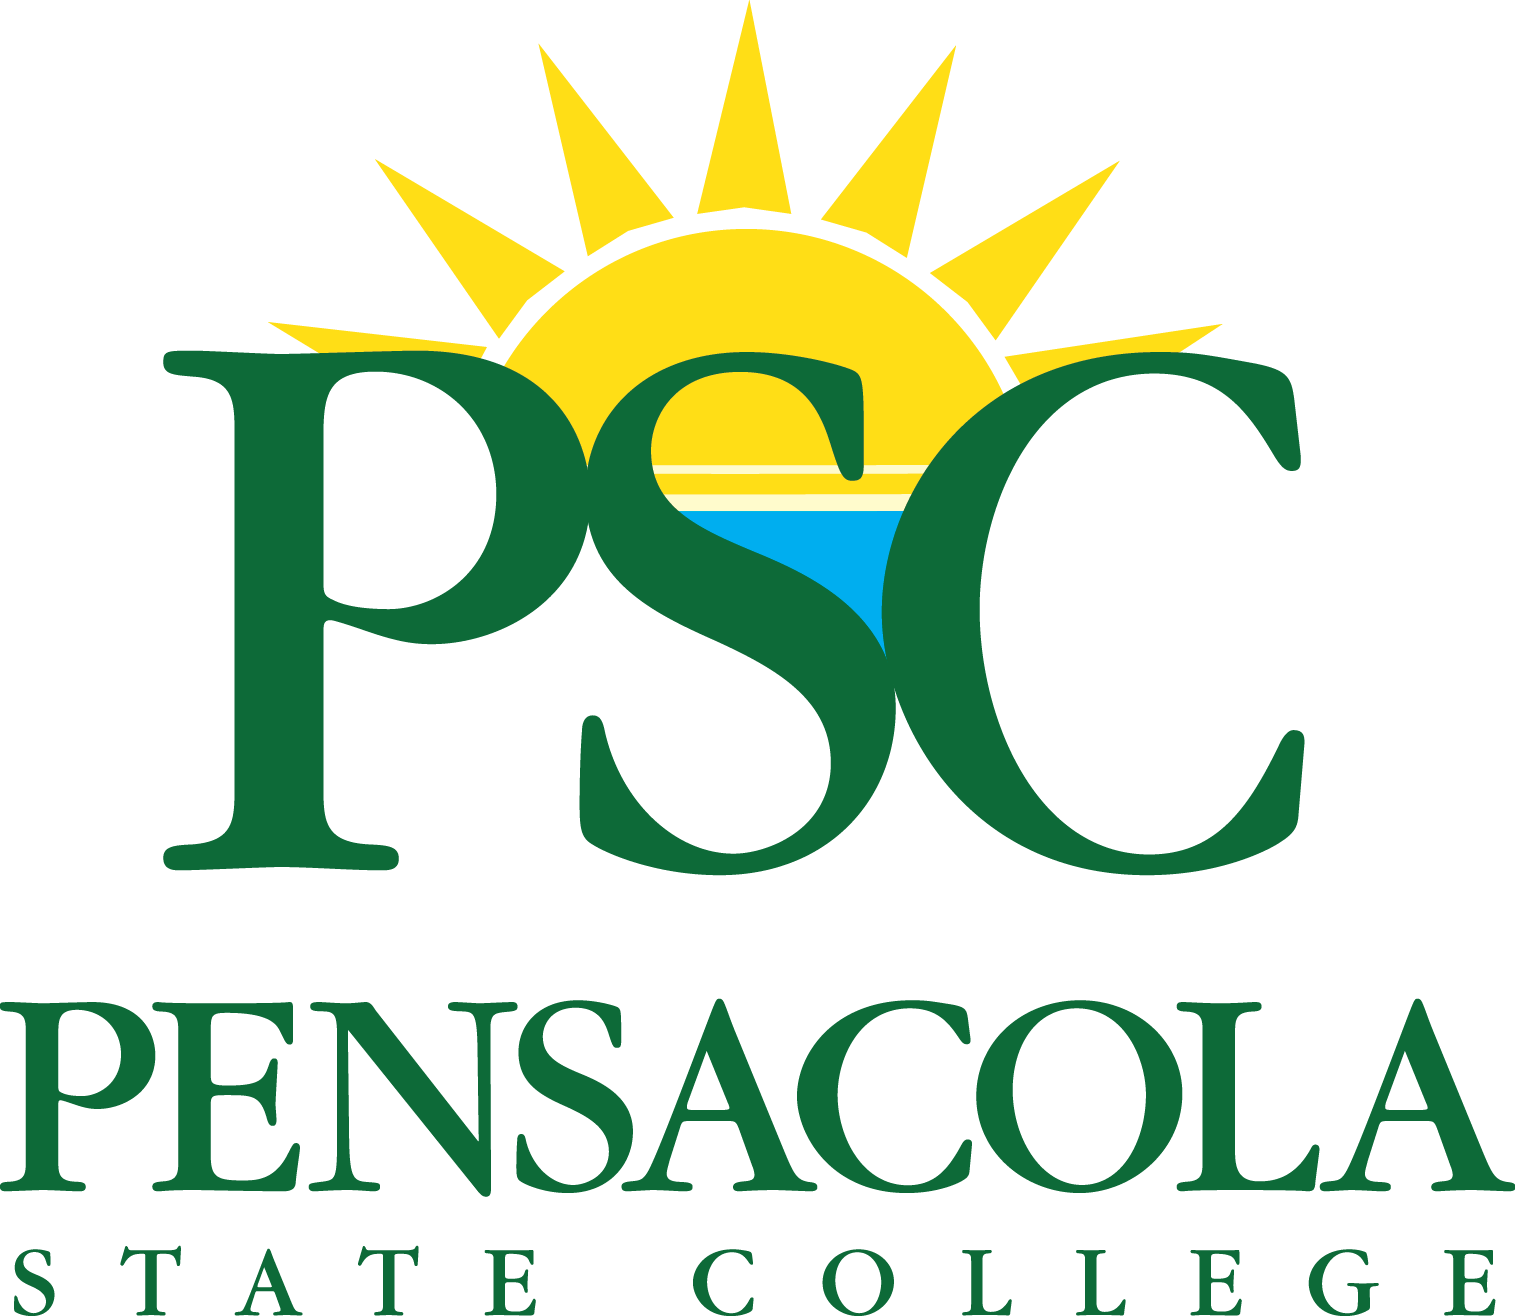 2 Colored College Logo - Pensacola State College